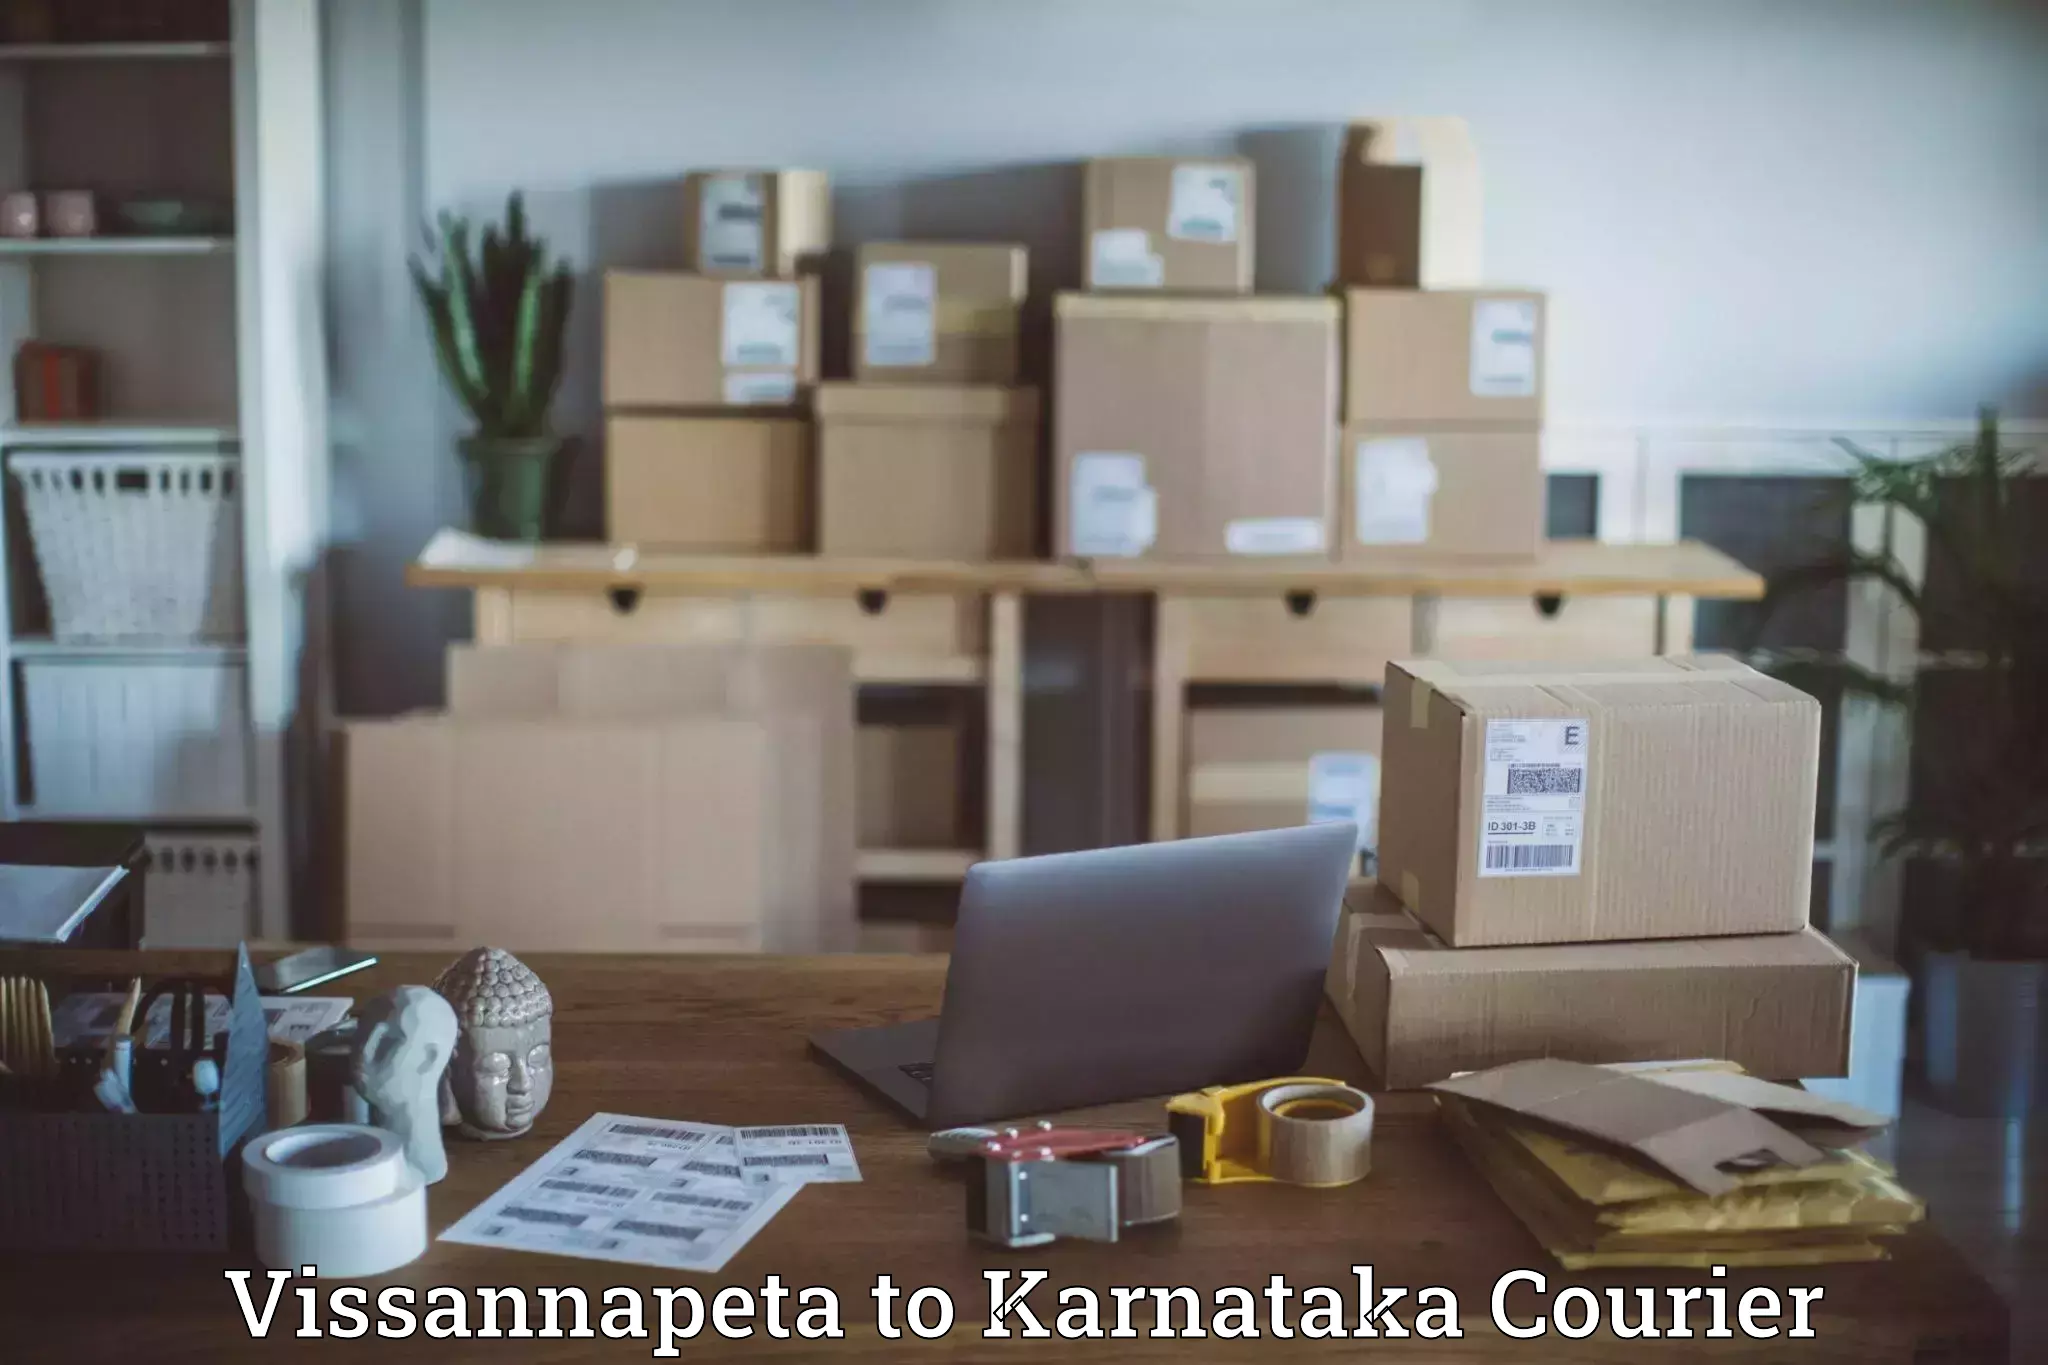 Courier service comparison Vissannapeta to Belthangady